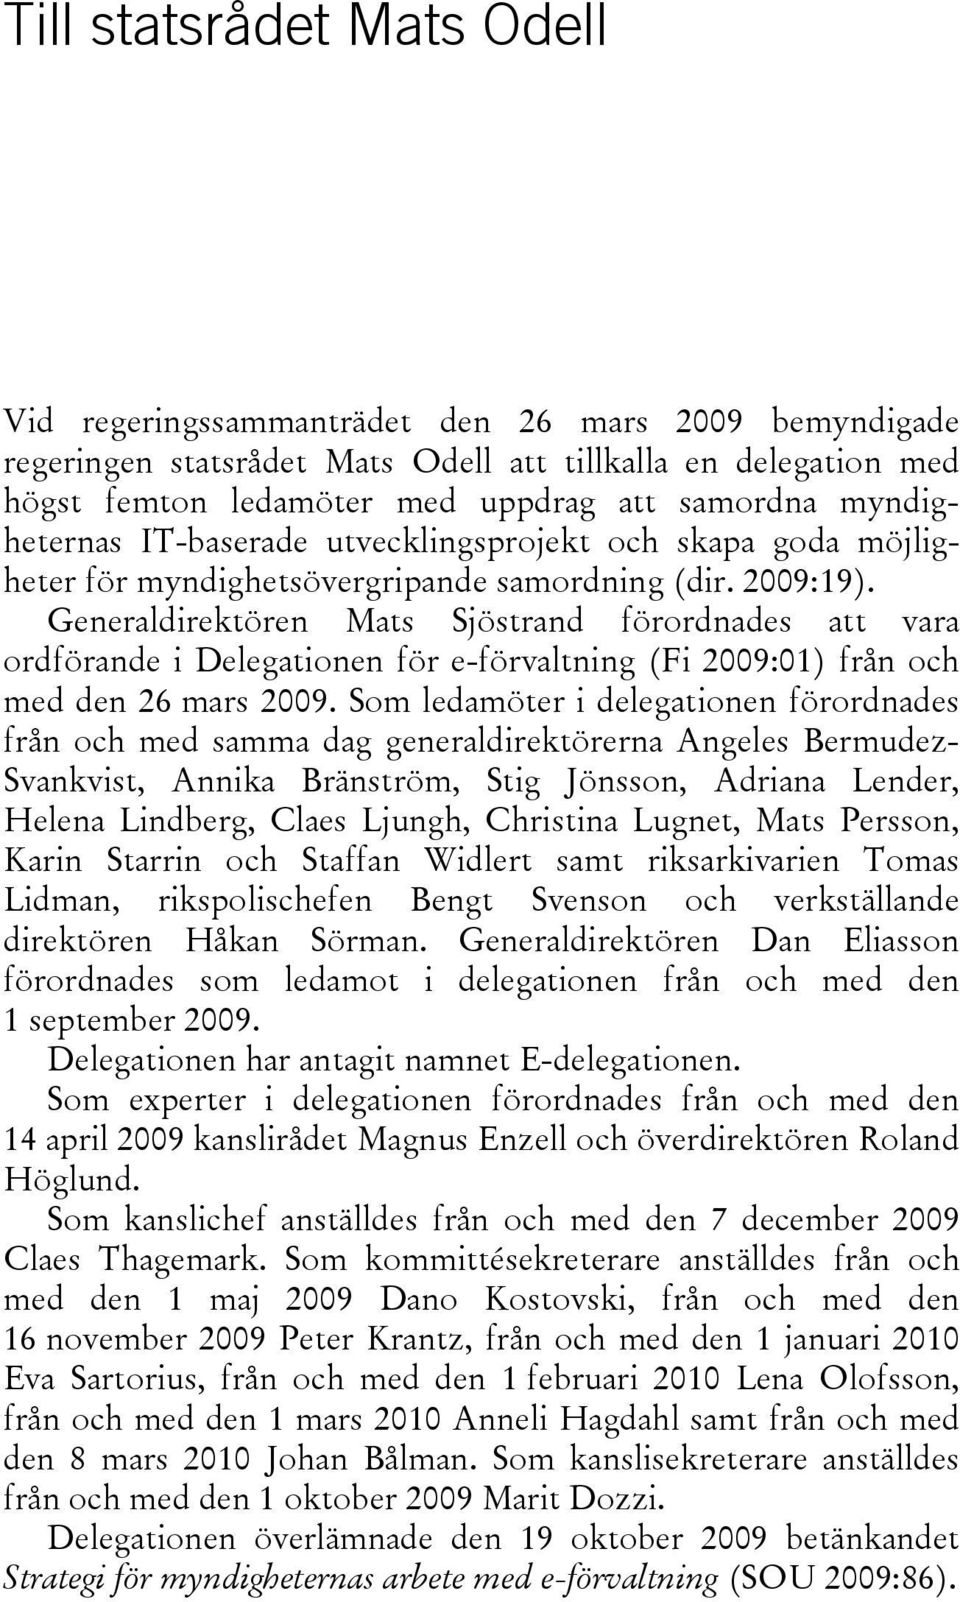 Generaldirektören Mats Sjöstrand förordnades att vara ordförande i Delegationen för e-förvaltning (Fi 2009:01) från och med den 26 mars 2009.